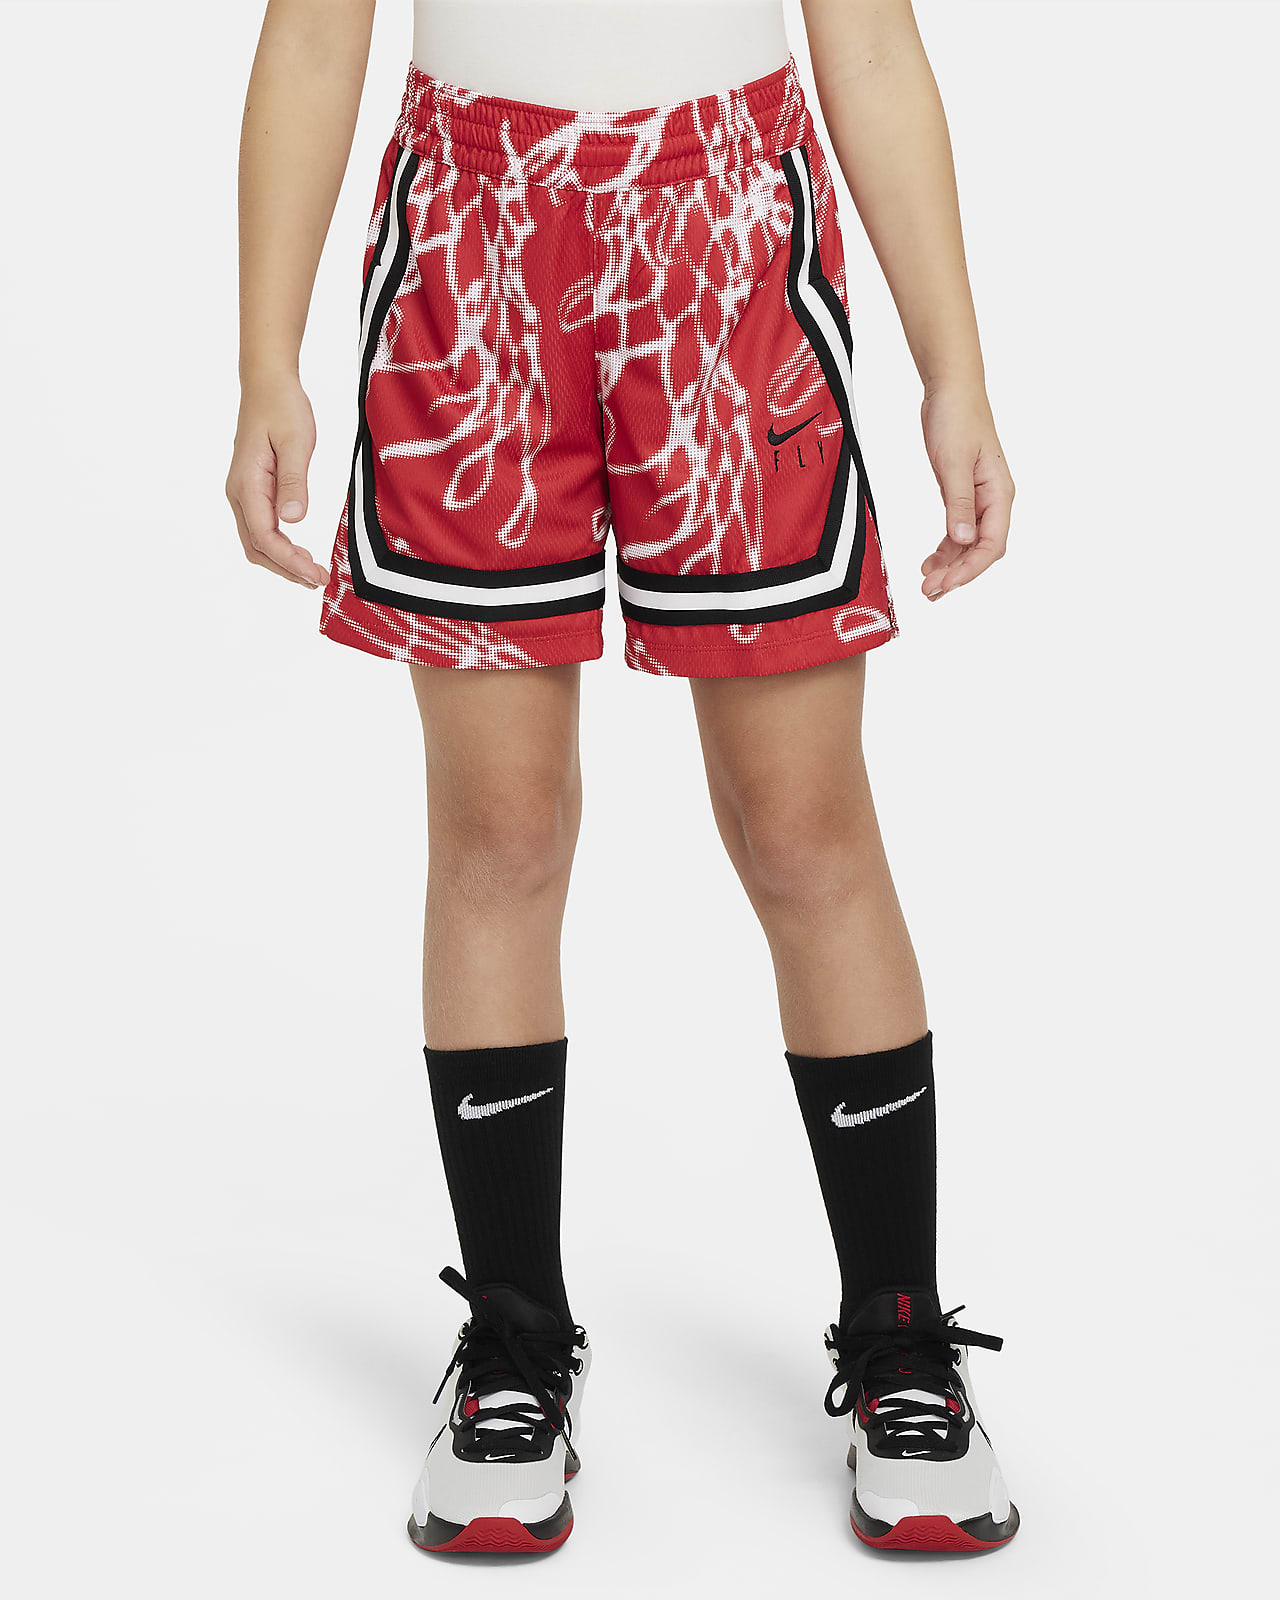 Shorts de básquetbol Dri-FIT para niña talla grande Nike Culture of Basketball Crossover